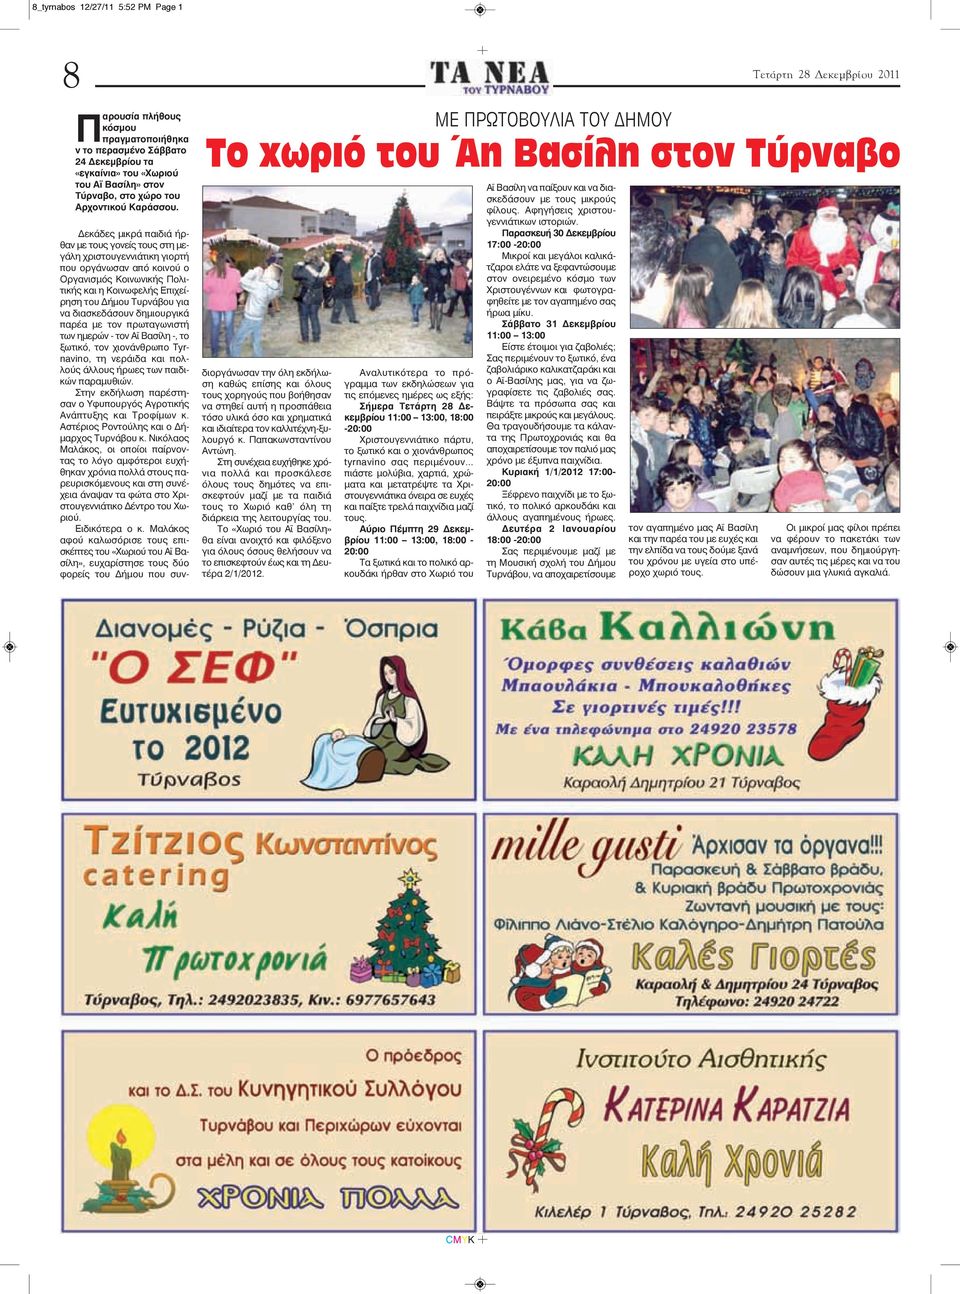 Δεκάδες μικρά παιδιά ήρθαν με τους γονείς τους στη μεγάλη χριστουγεννιάτικη γιορτή που οργάνωσαν από κοινού ο Οργανισμός Κοινωνικής Πολιτικής και η Κοινωφελής Επιχείρηση του Δήμου Τυρνάβου για να